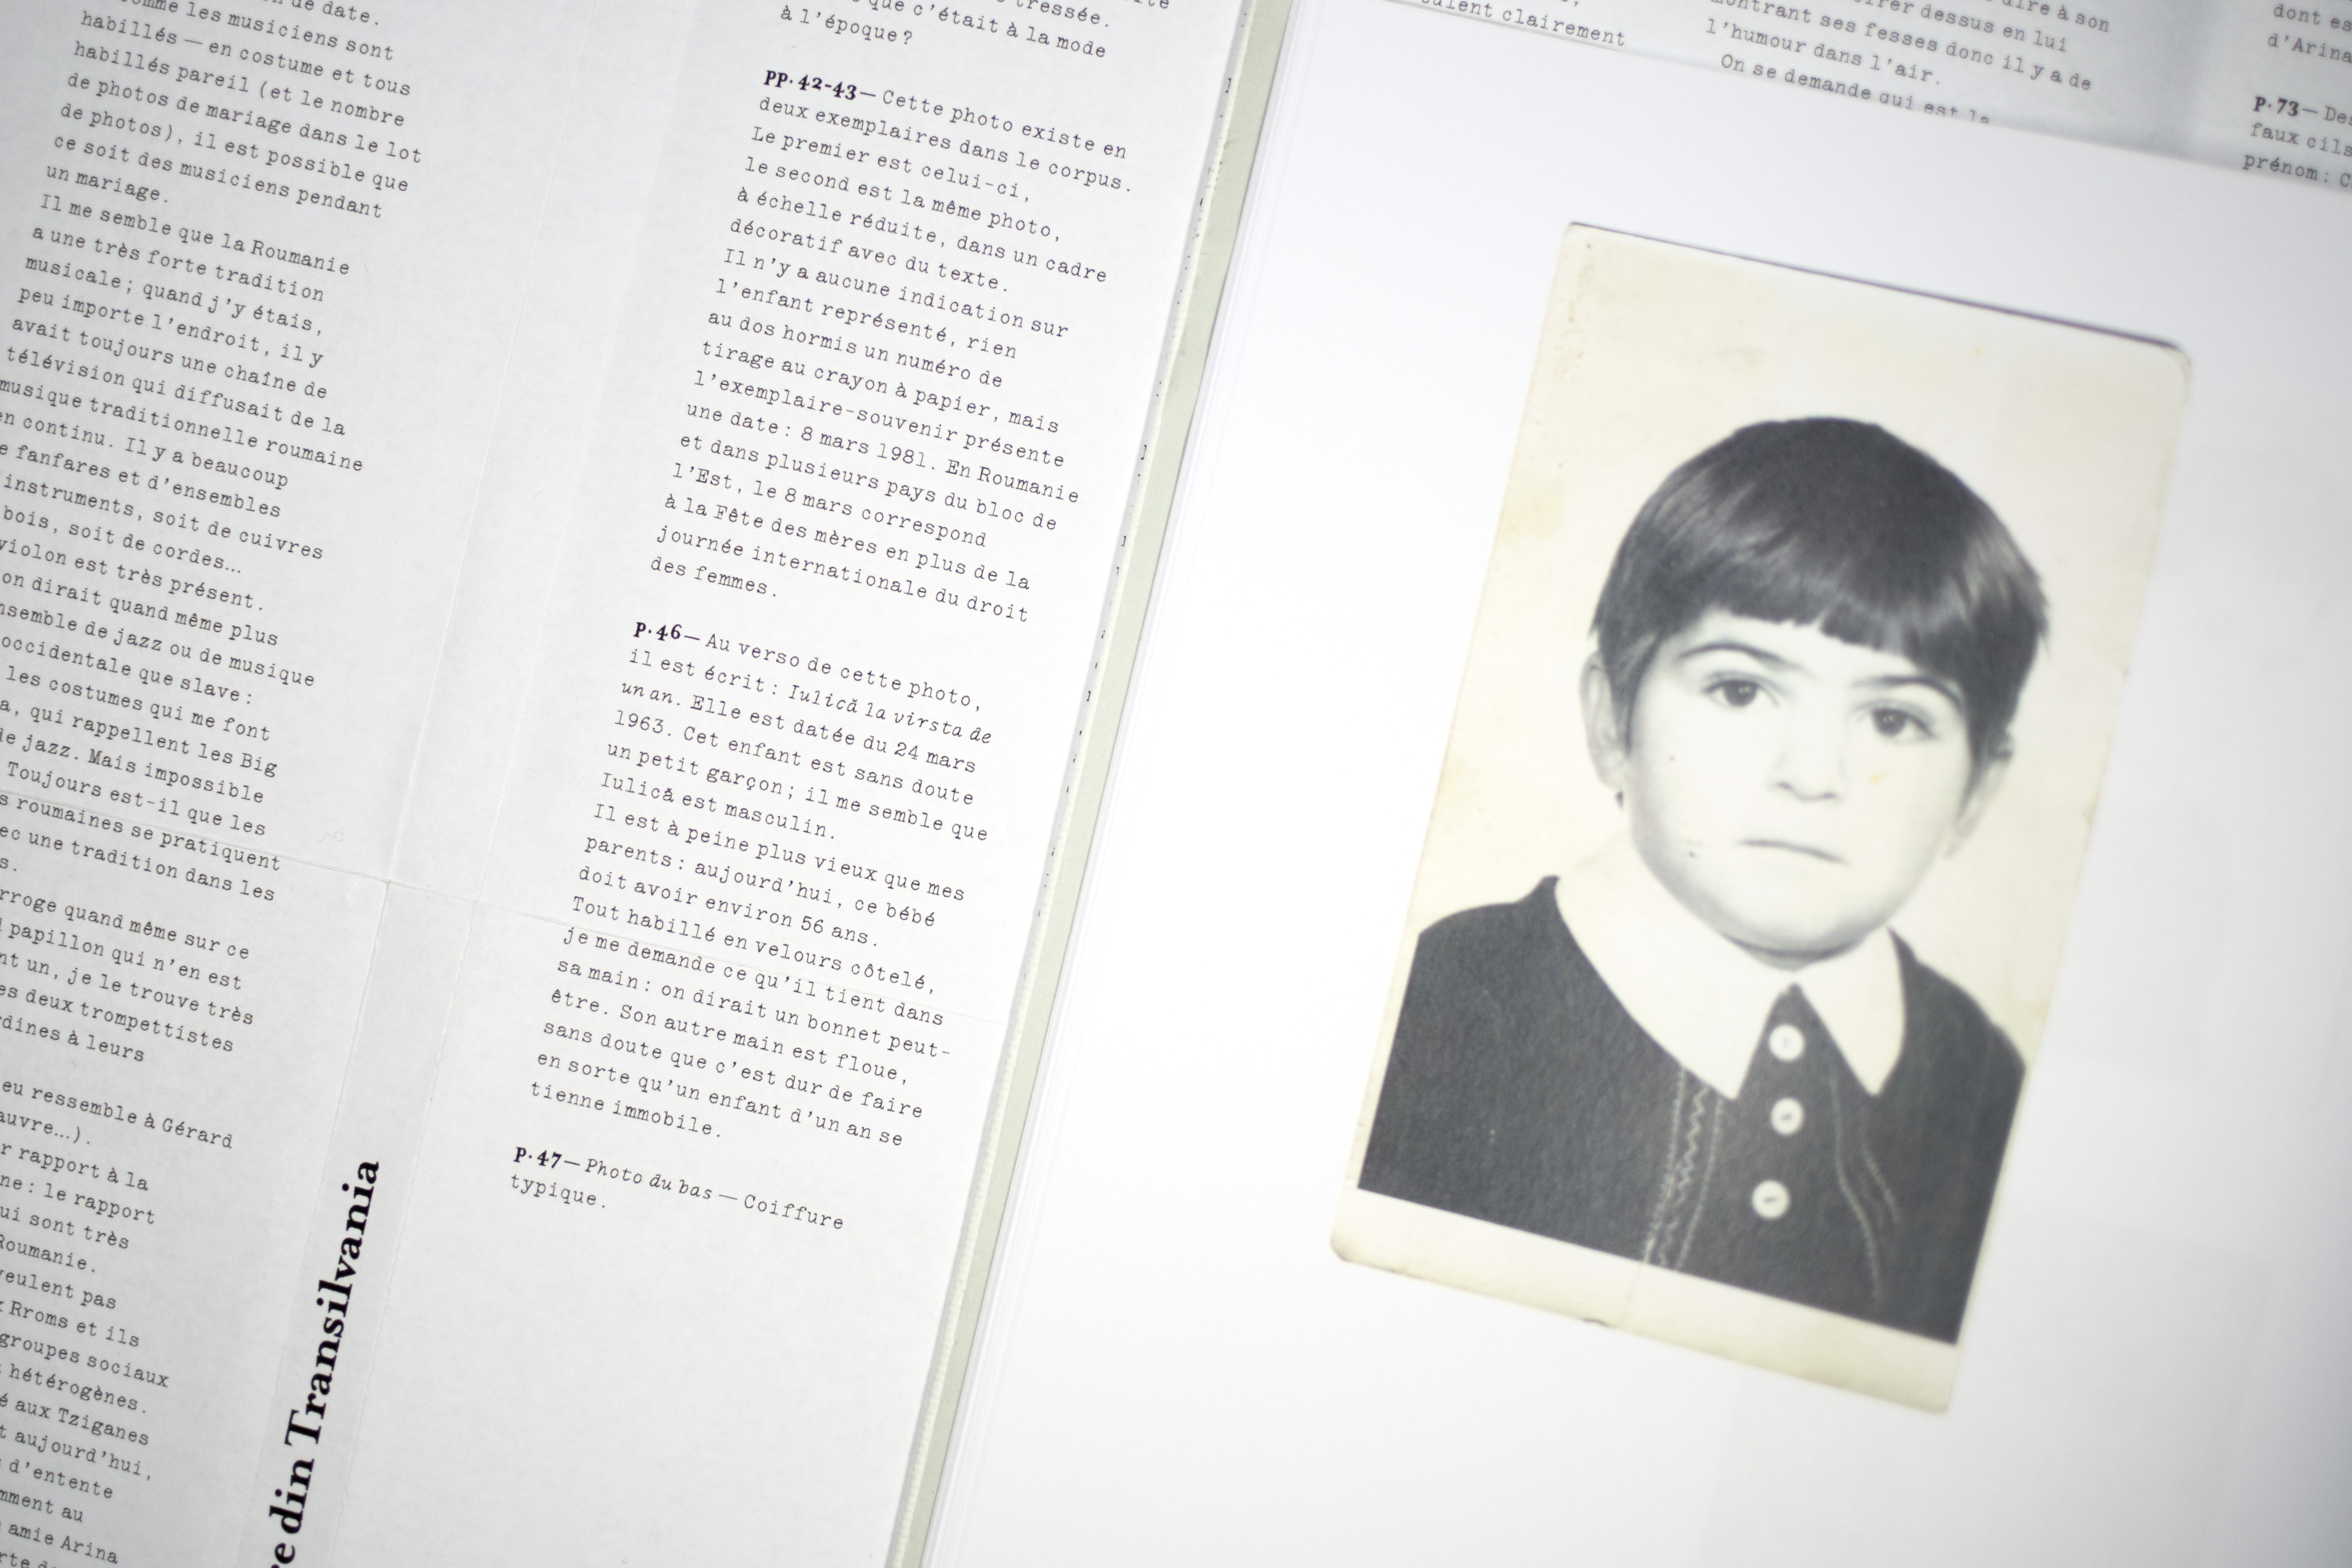 édition, site web et affiches de diplôme autour d'une archive photographique d'une famille roumaine